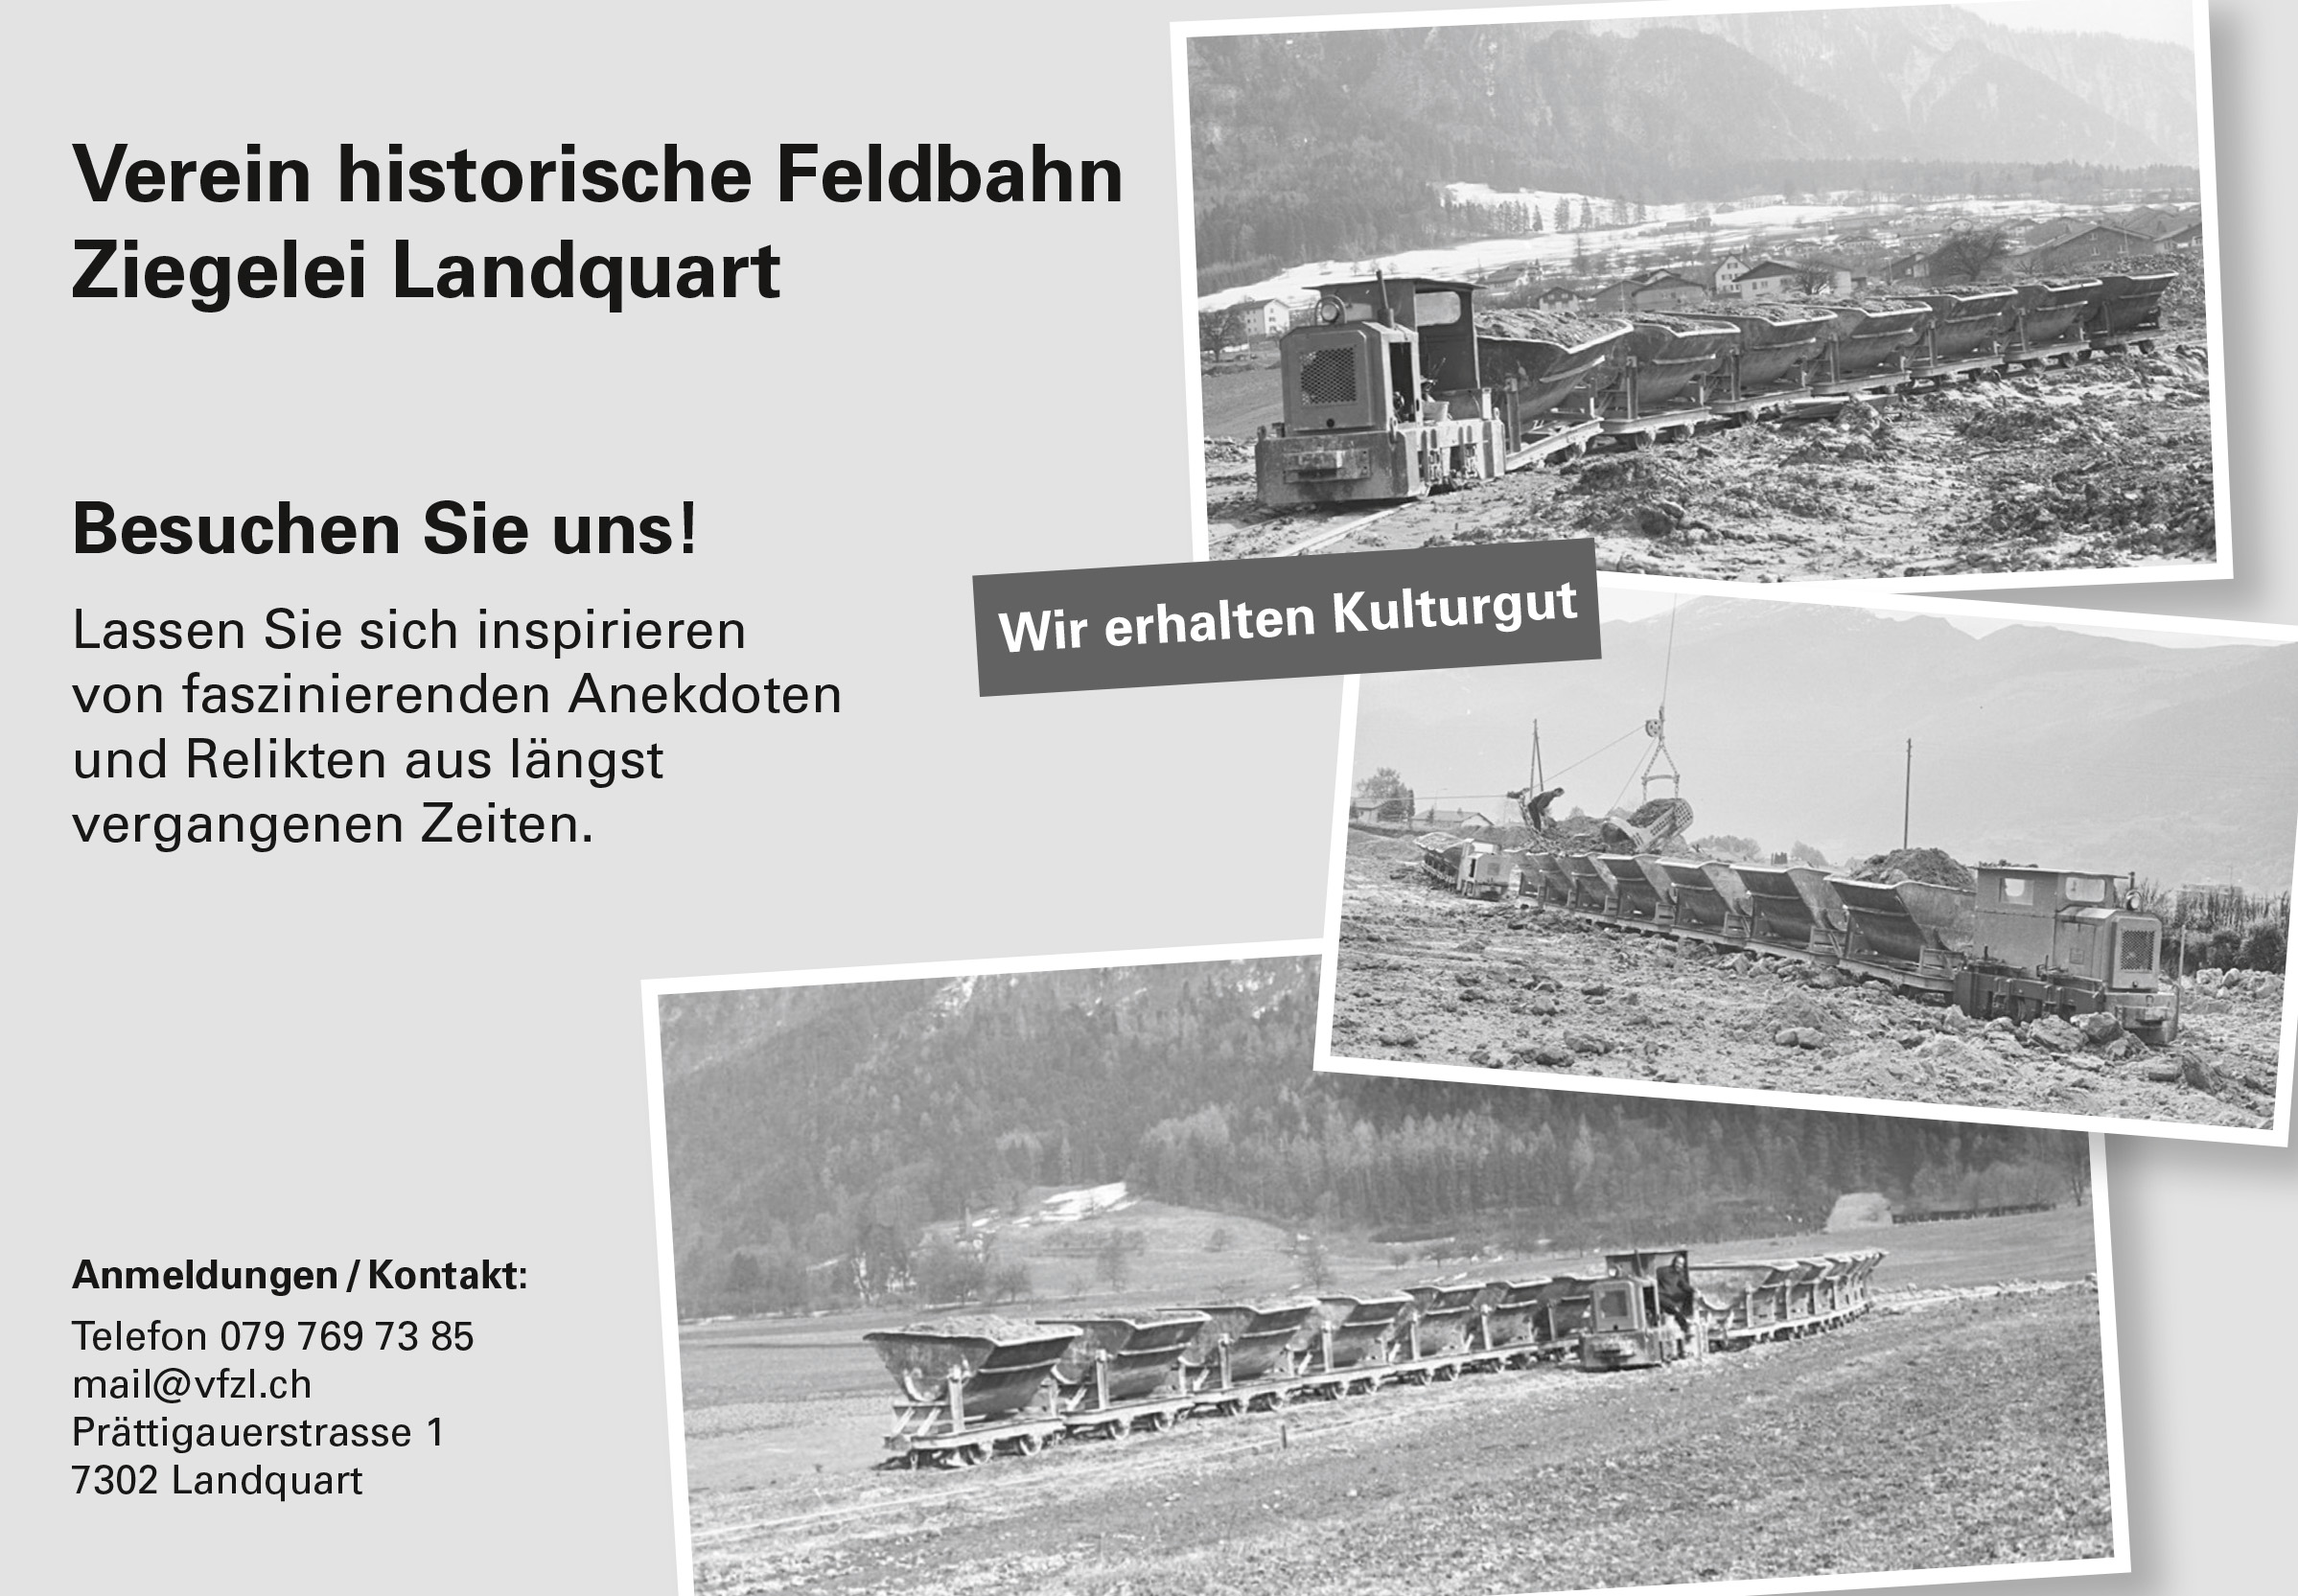 Verein historische Feldbahn Ziegelei Landquart (VFZL)